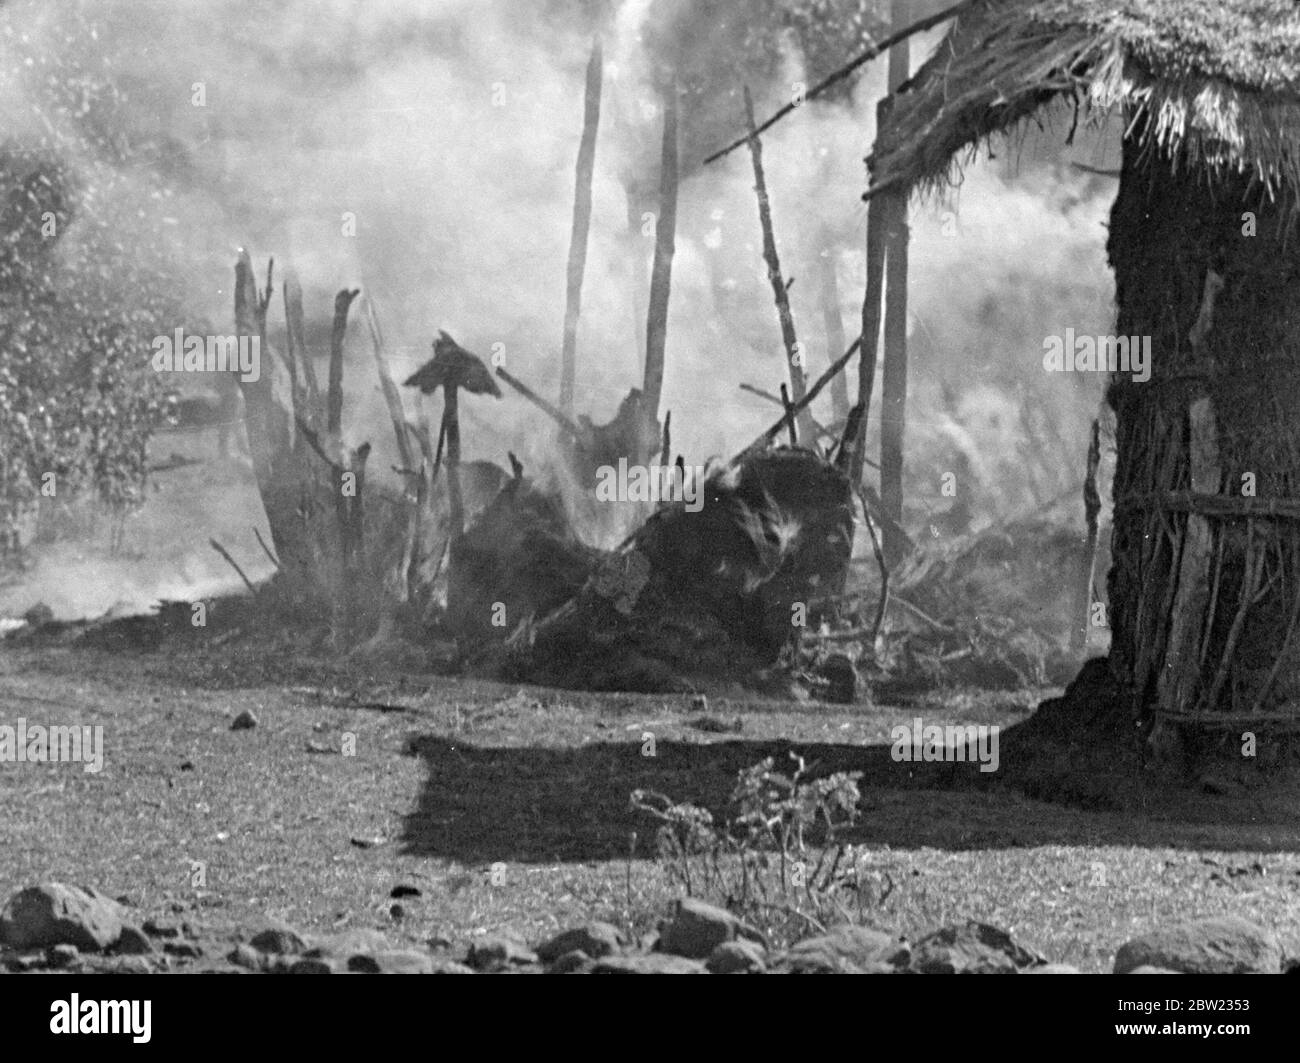 Italienischer Äthiopienkrieg, 1935 -1936 die Bombardierung des äthiopischen Dorfes Dessye durch italienische Flugzeuge. Dorfgebäude in Brand. . Dezember 1935 Stockfoto